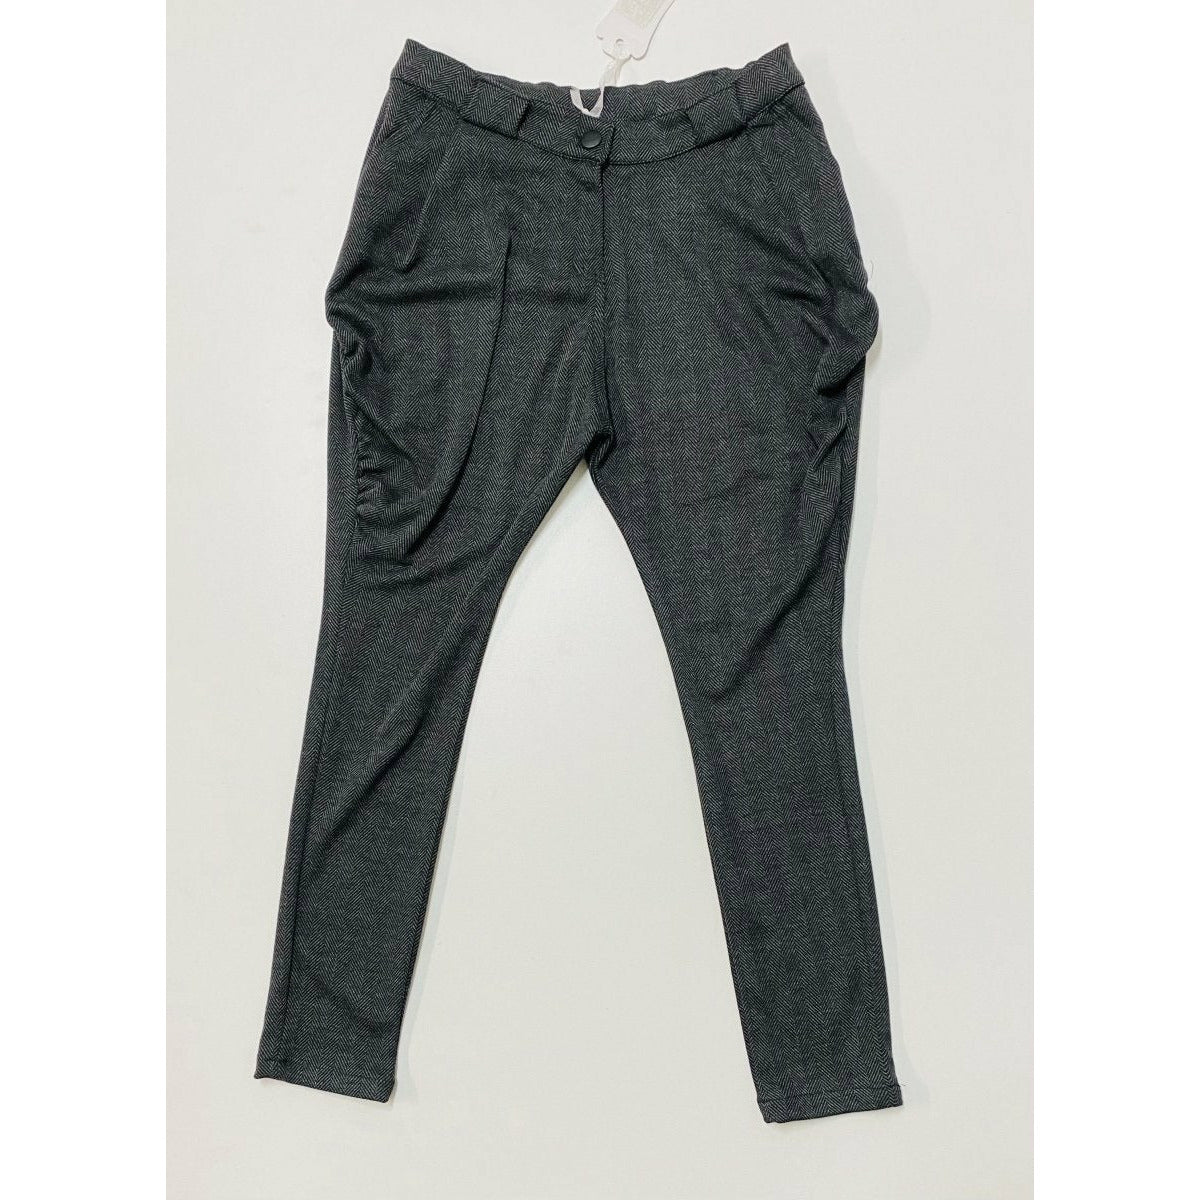 Pantalone camosciato Bimba - Mstore016